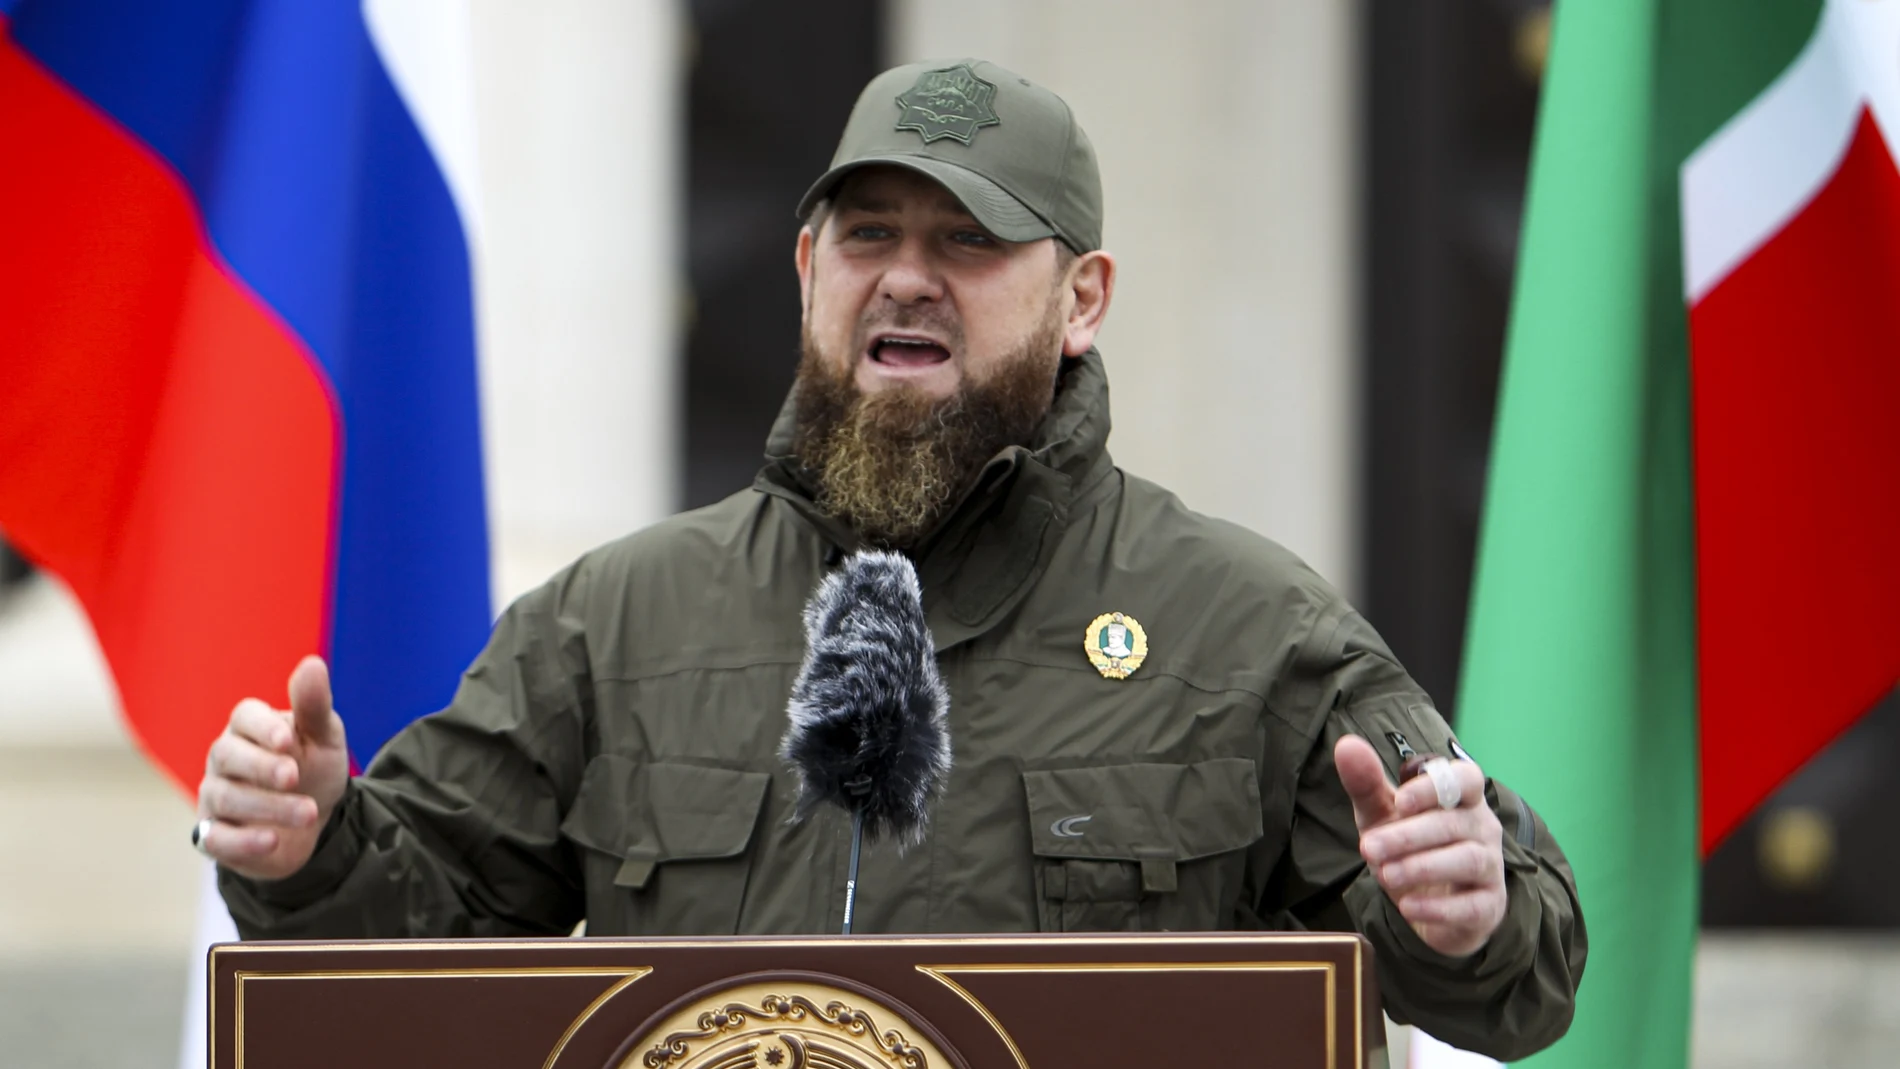 Kadyrov, que está al frente, ha sido acusado por observadores internacionales e independientes de graves violaciones de los derechos humanos en su territorio y fuera de él.